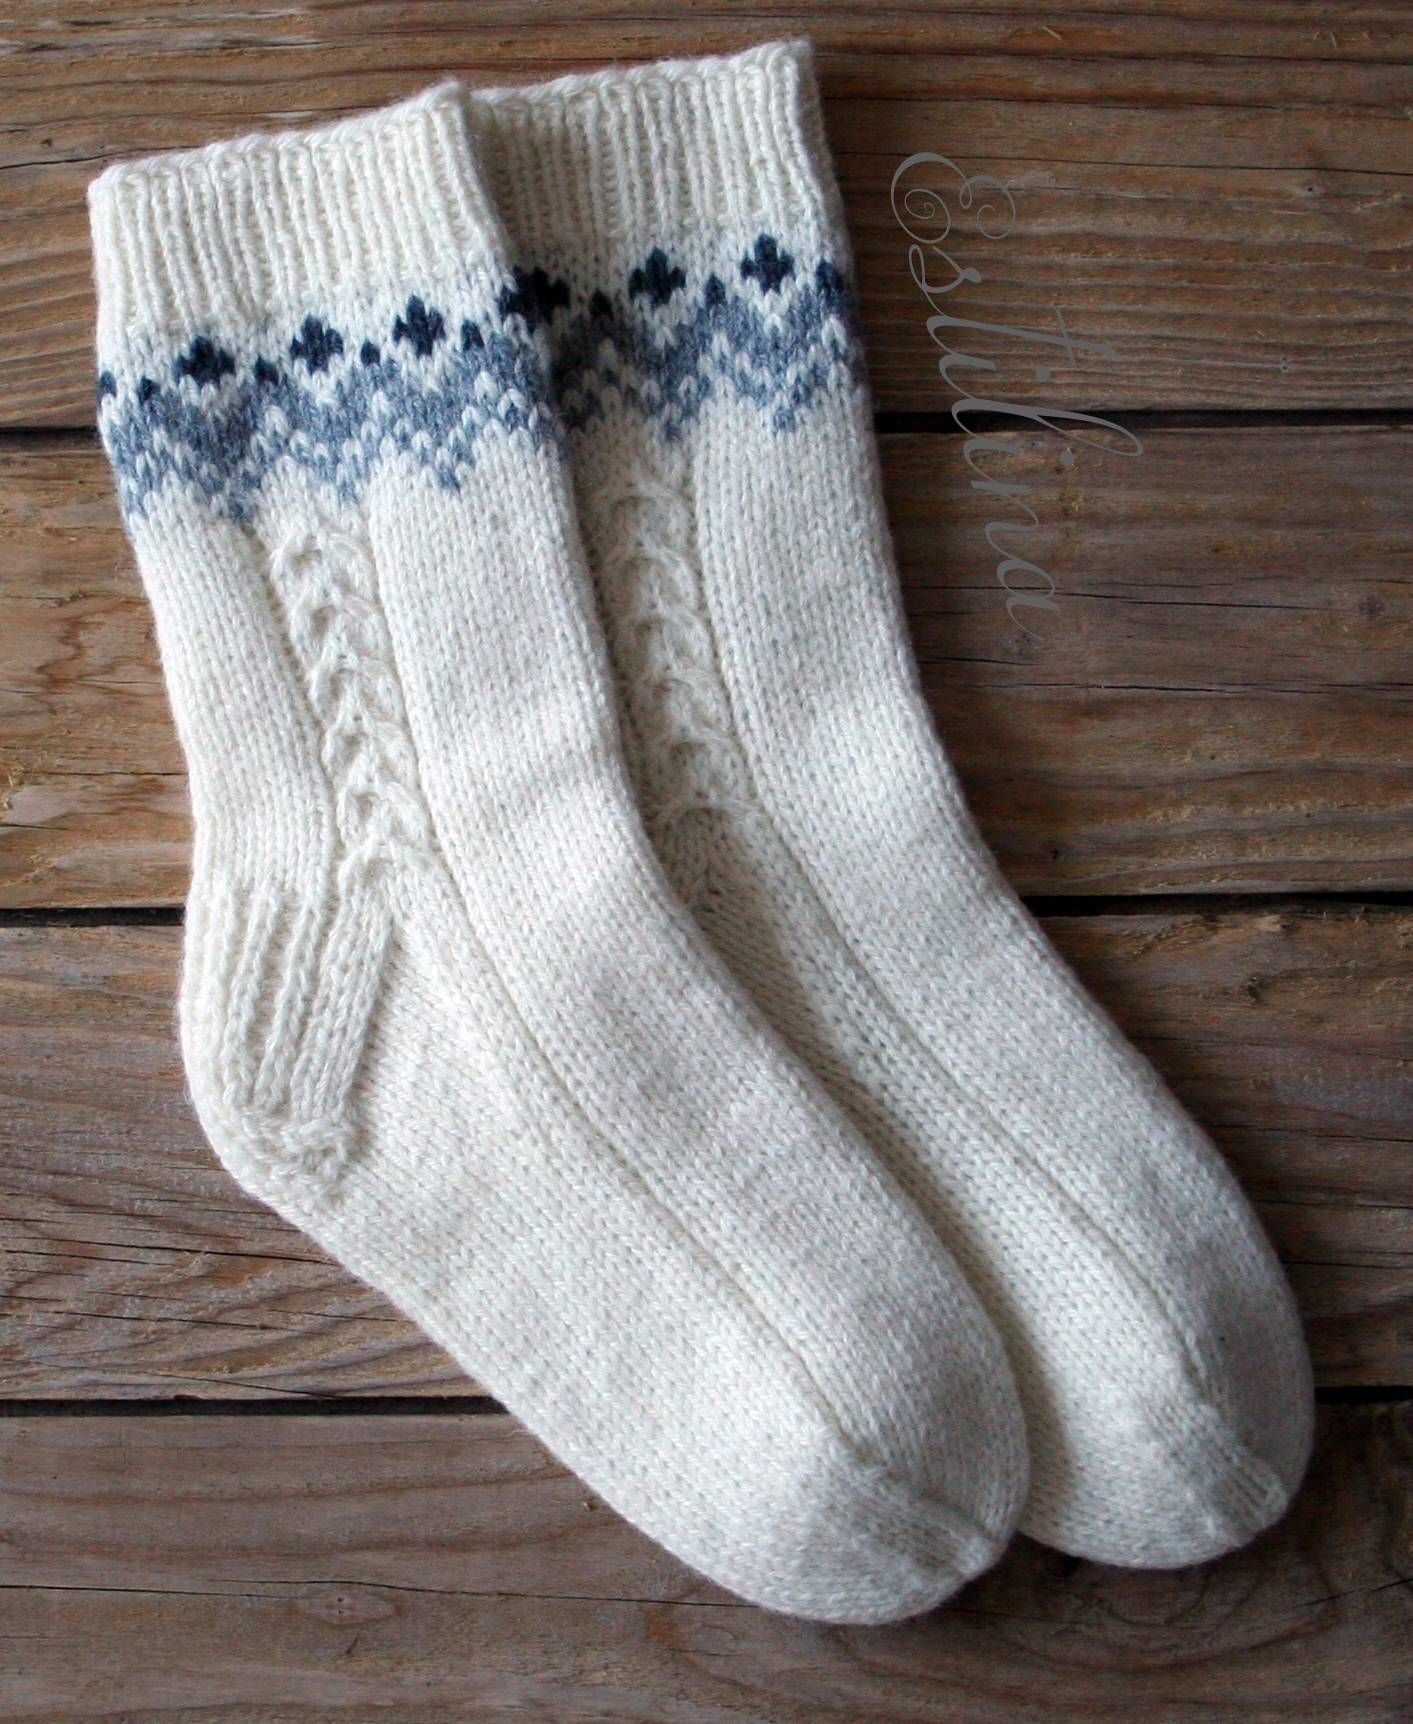 #inspiratie #breien sokken #knitting #socks handgestrickte Socken